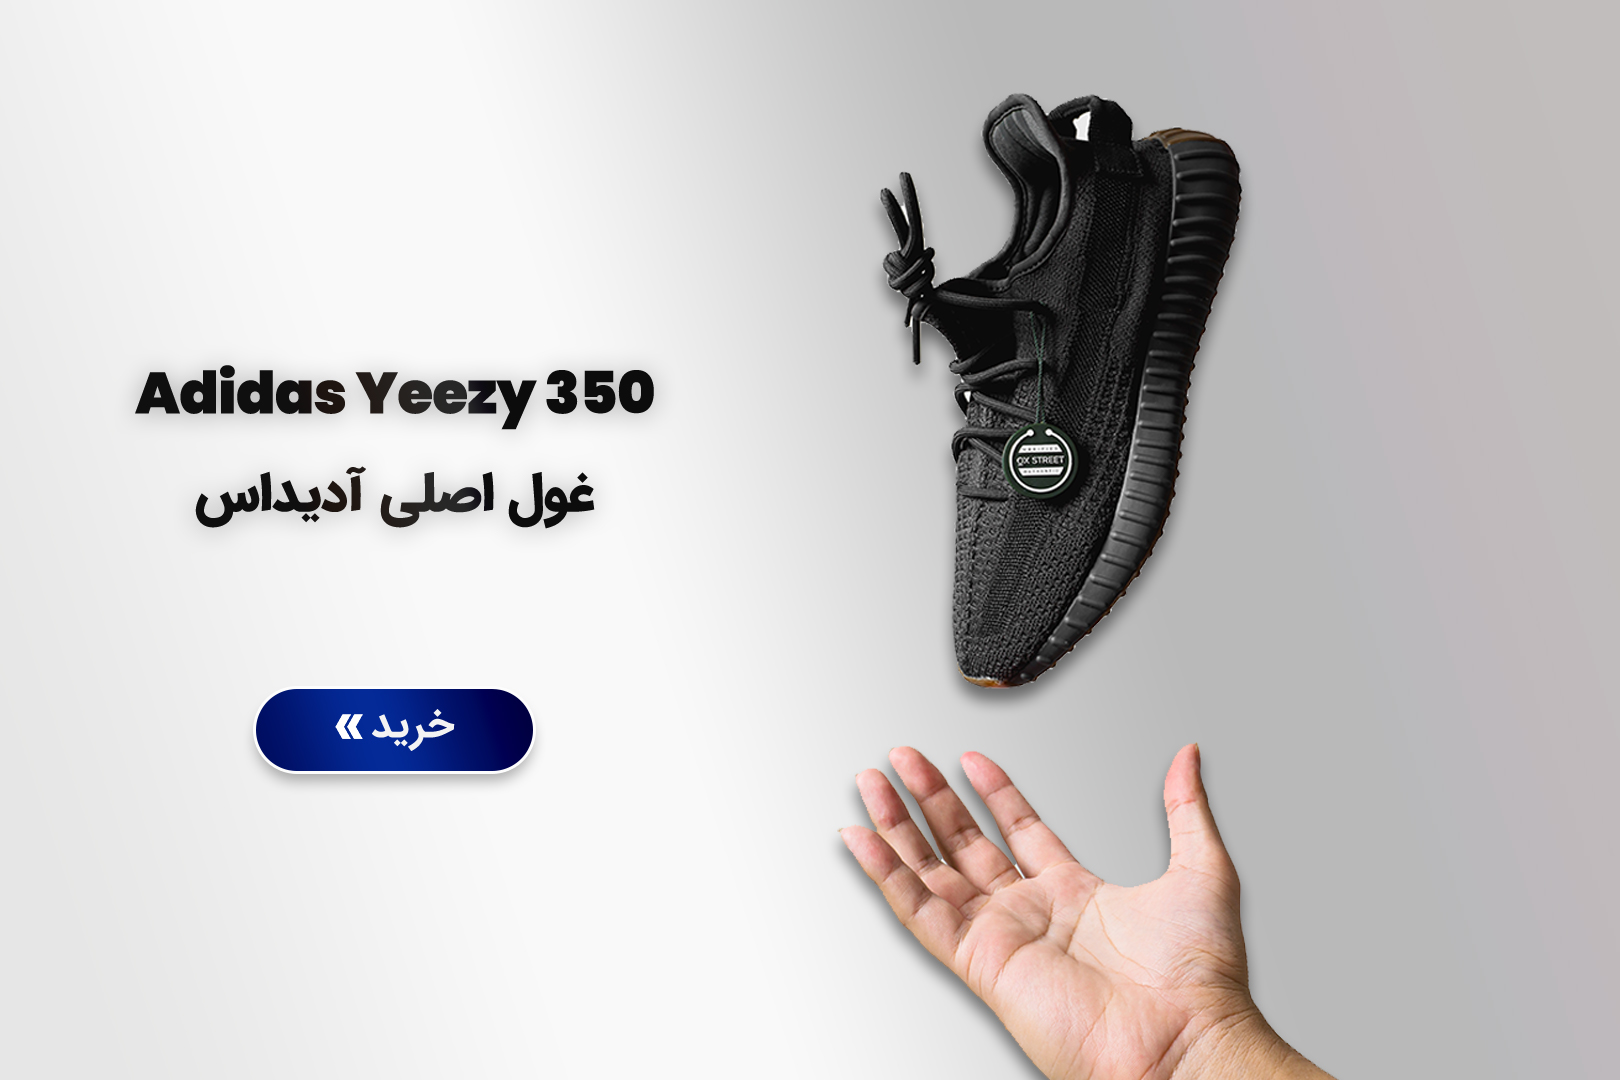 Adidas Yeezy 350